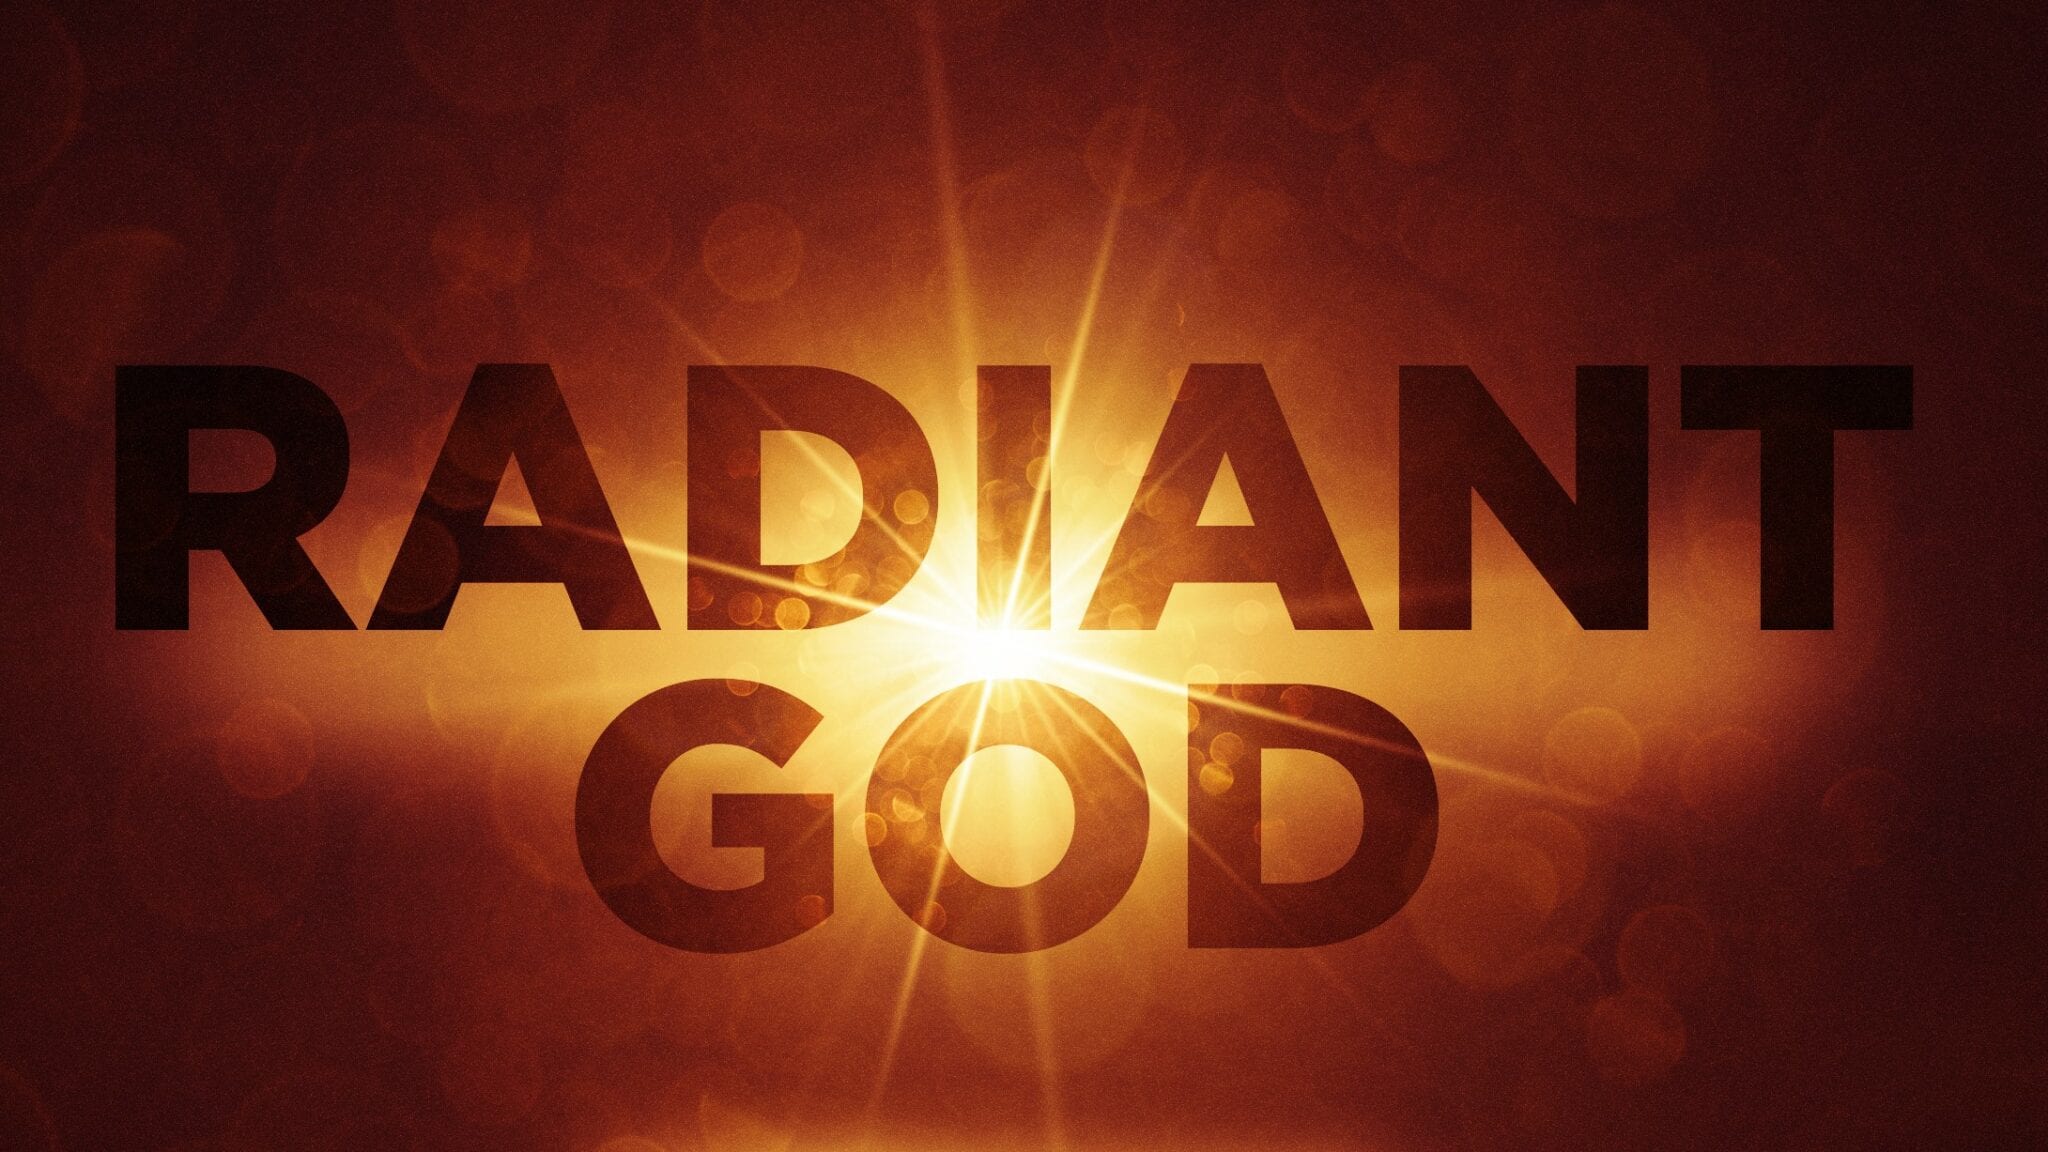 Radiant God: Sinful Pride